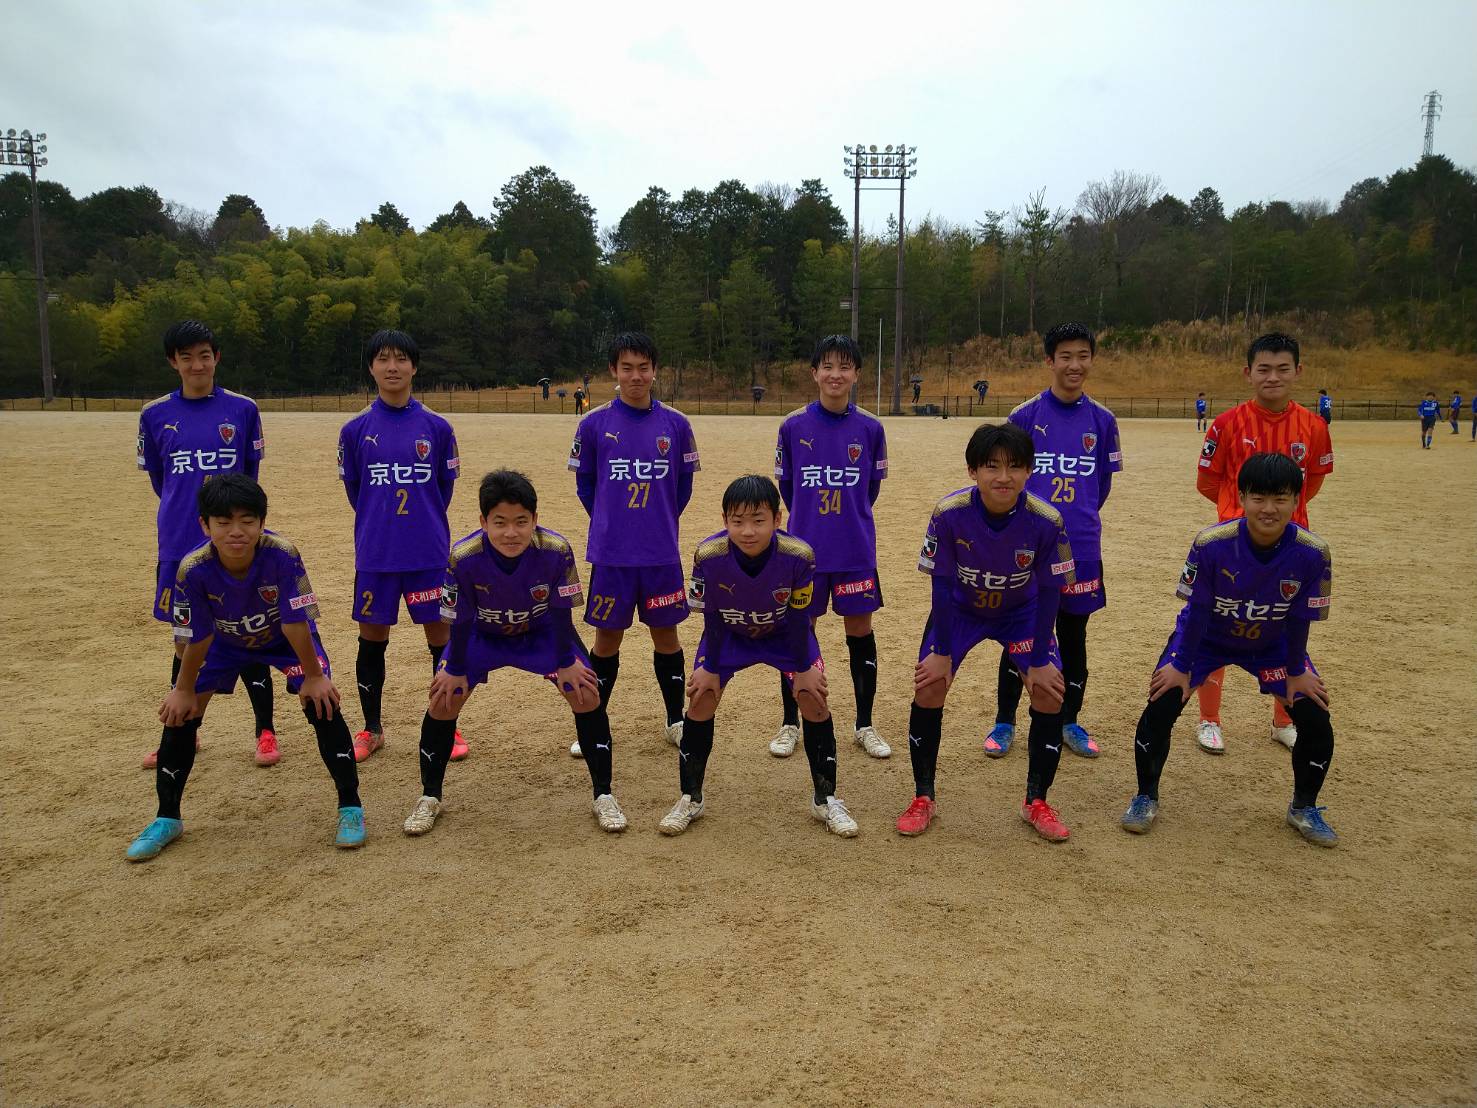 【新U-15】高円宮杯JFA U-15サッカーリーグ滋賀2022 2部リーグ第6節